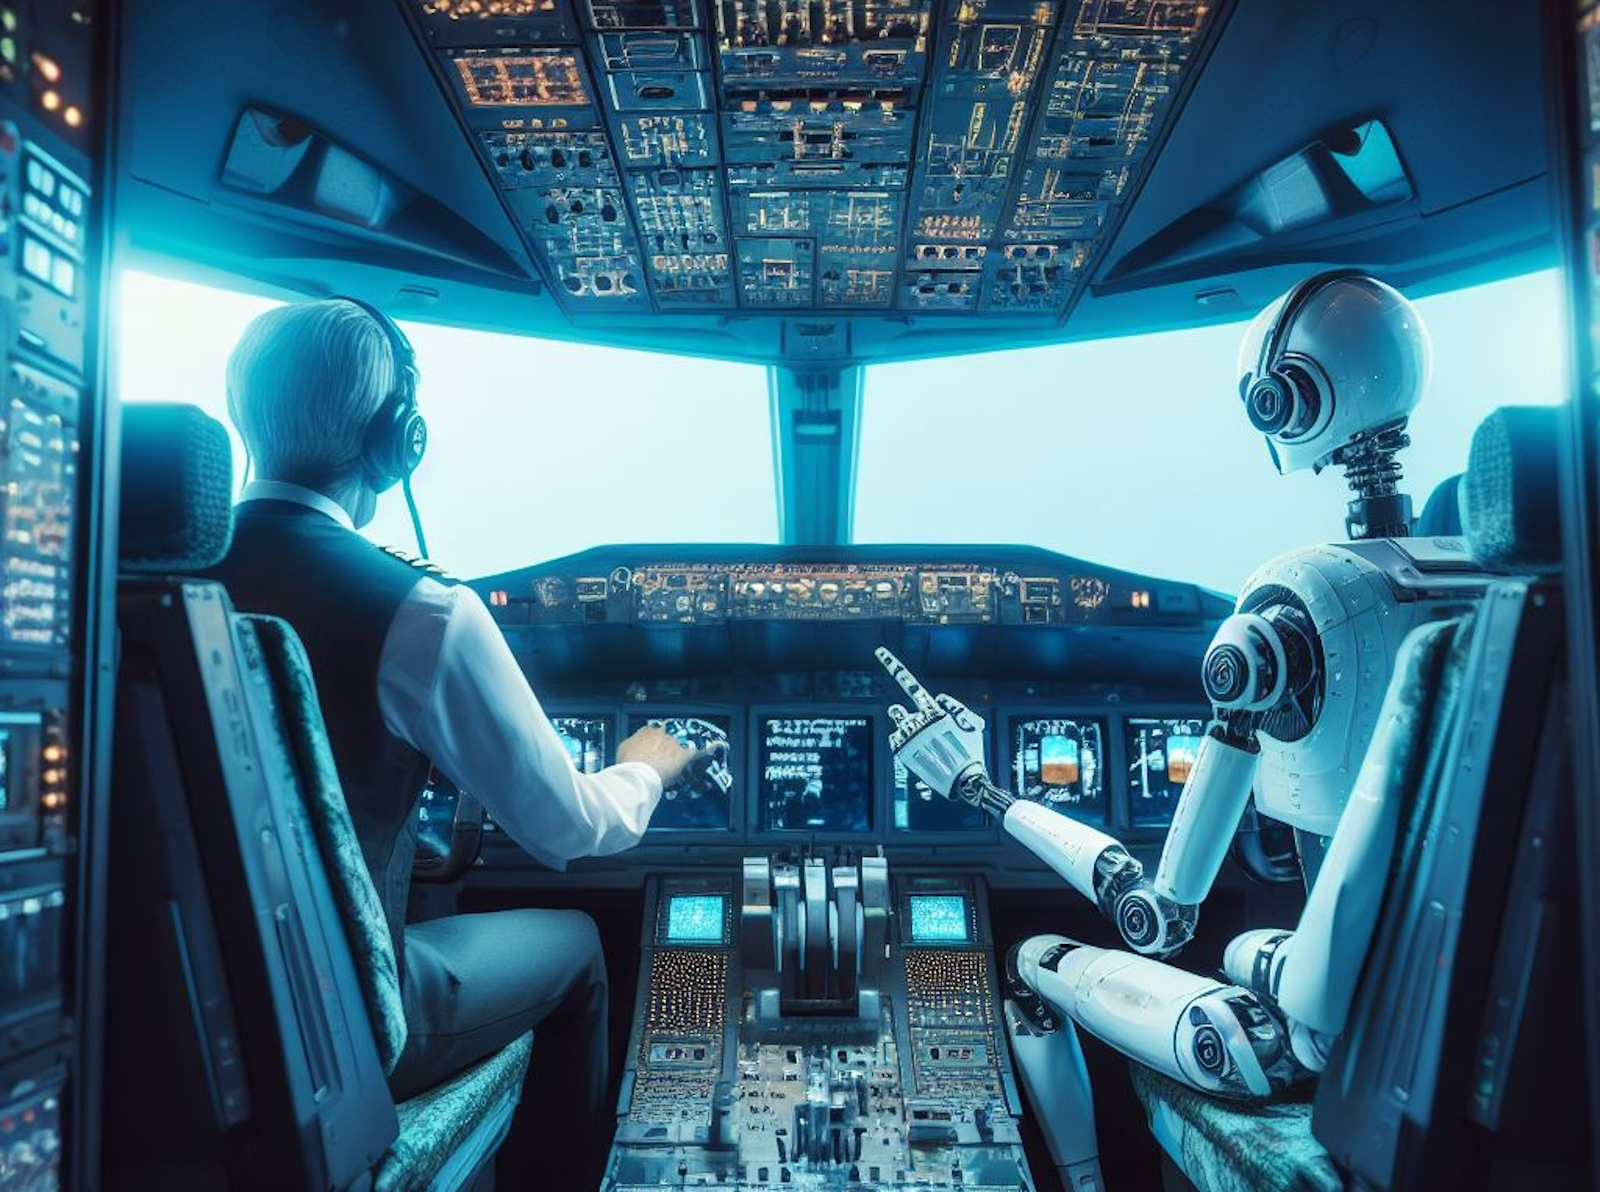 L’IA pourrait devenir un copilote utile pour recentrer le pilote sur ses tâches. © Sylvain Biget, Bing Image Creator